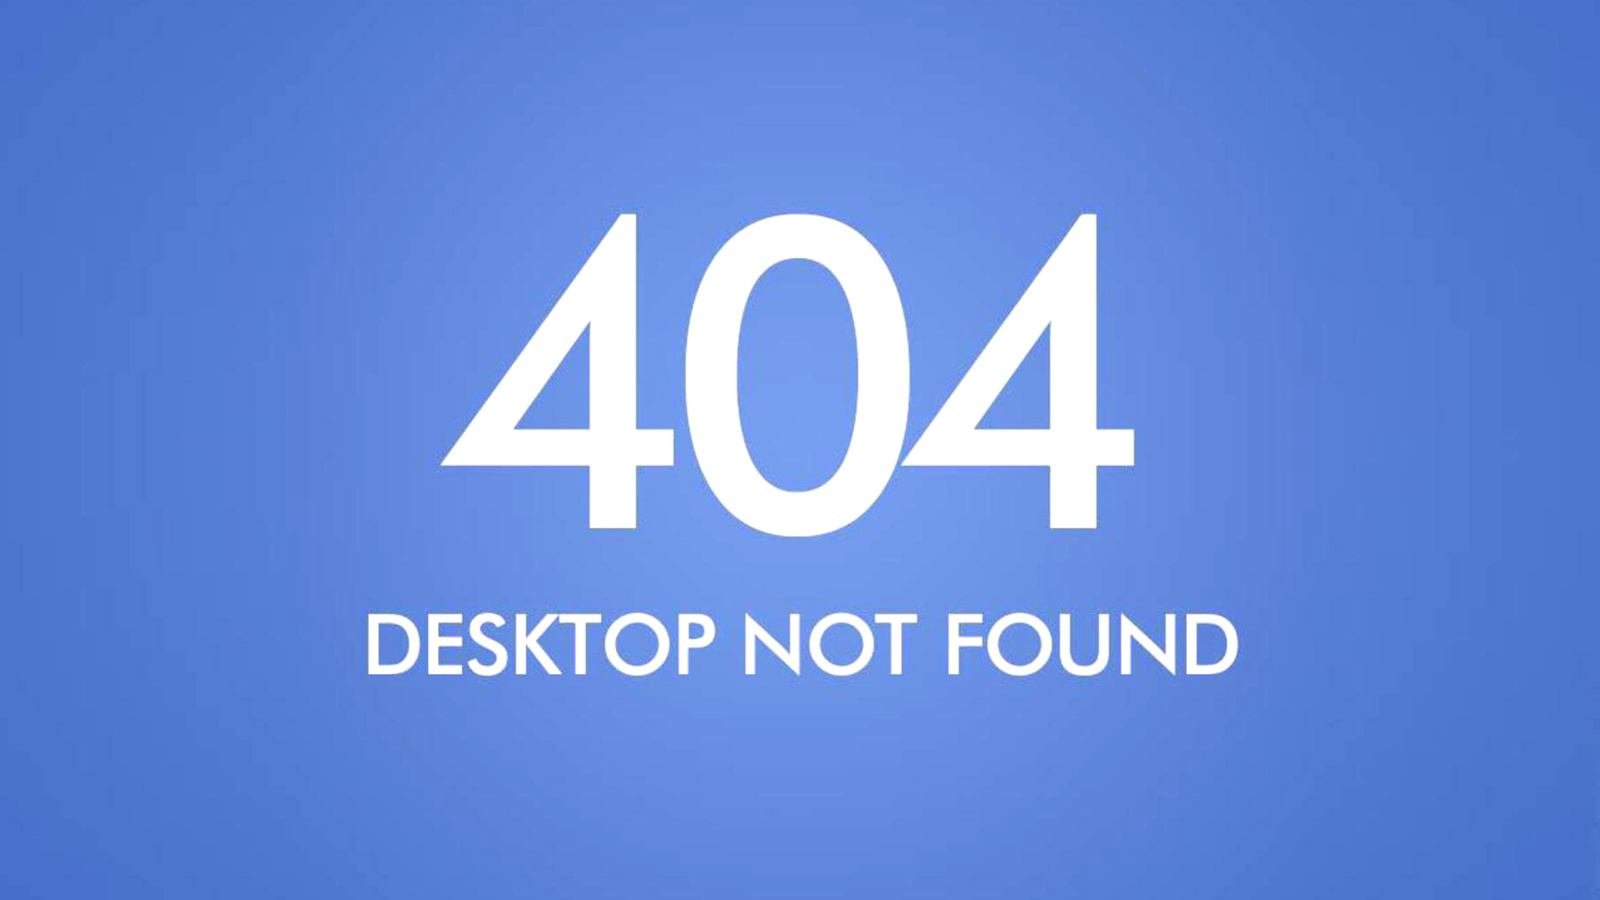 404 Desktop Not Found wallpaper 1600x900